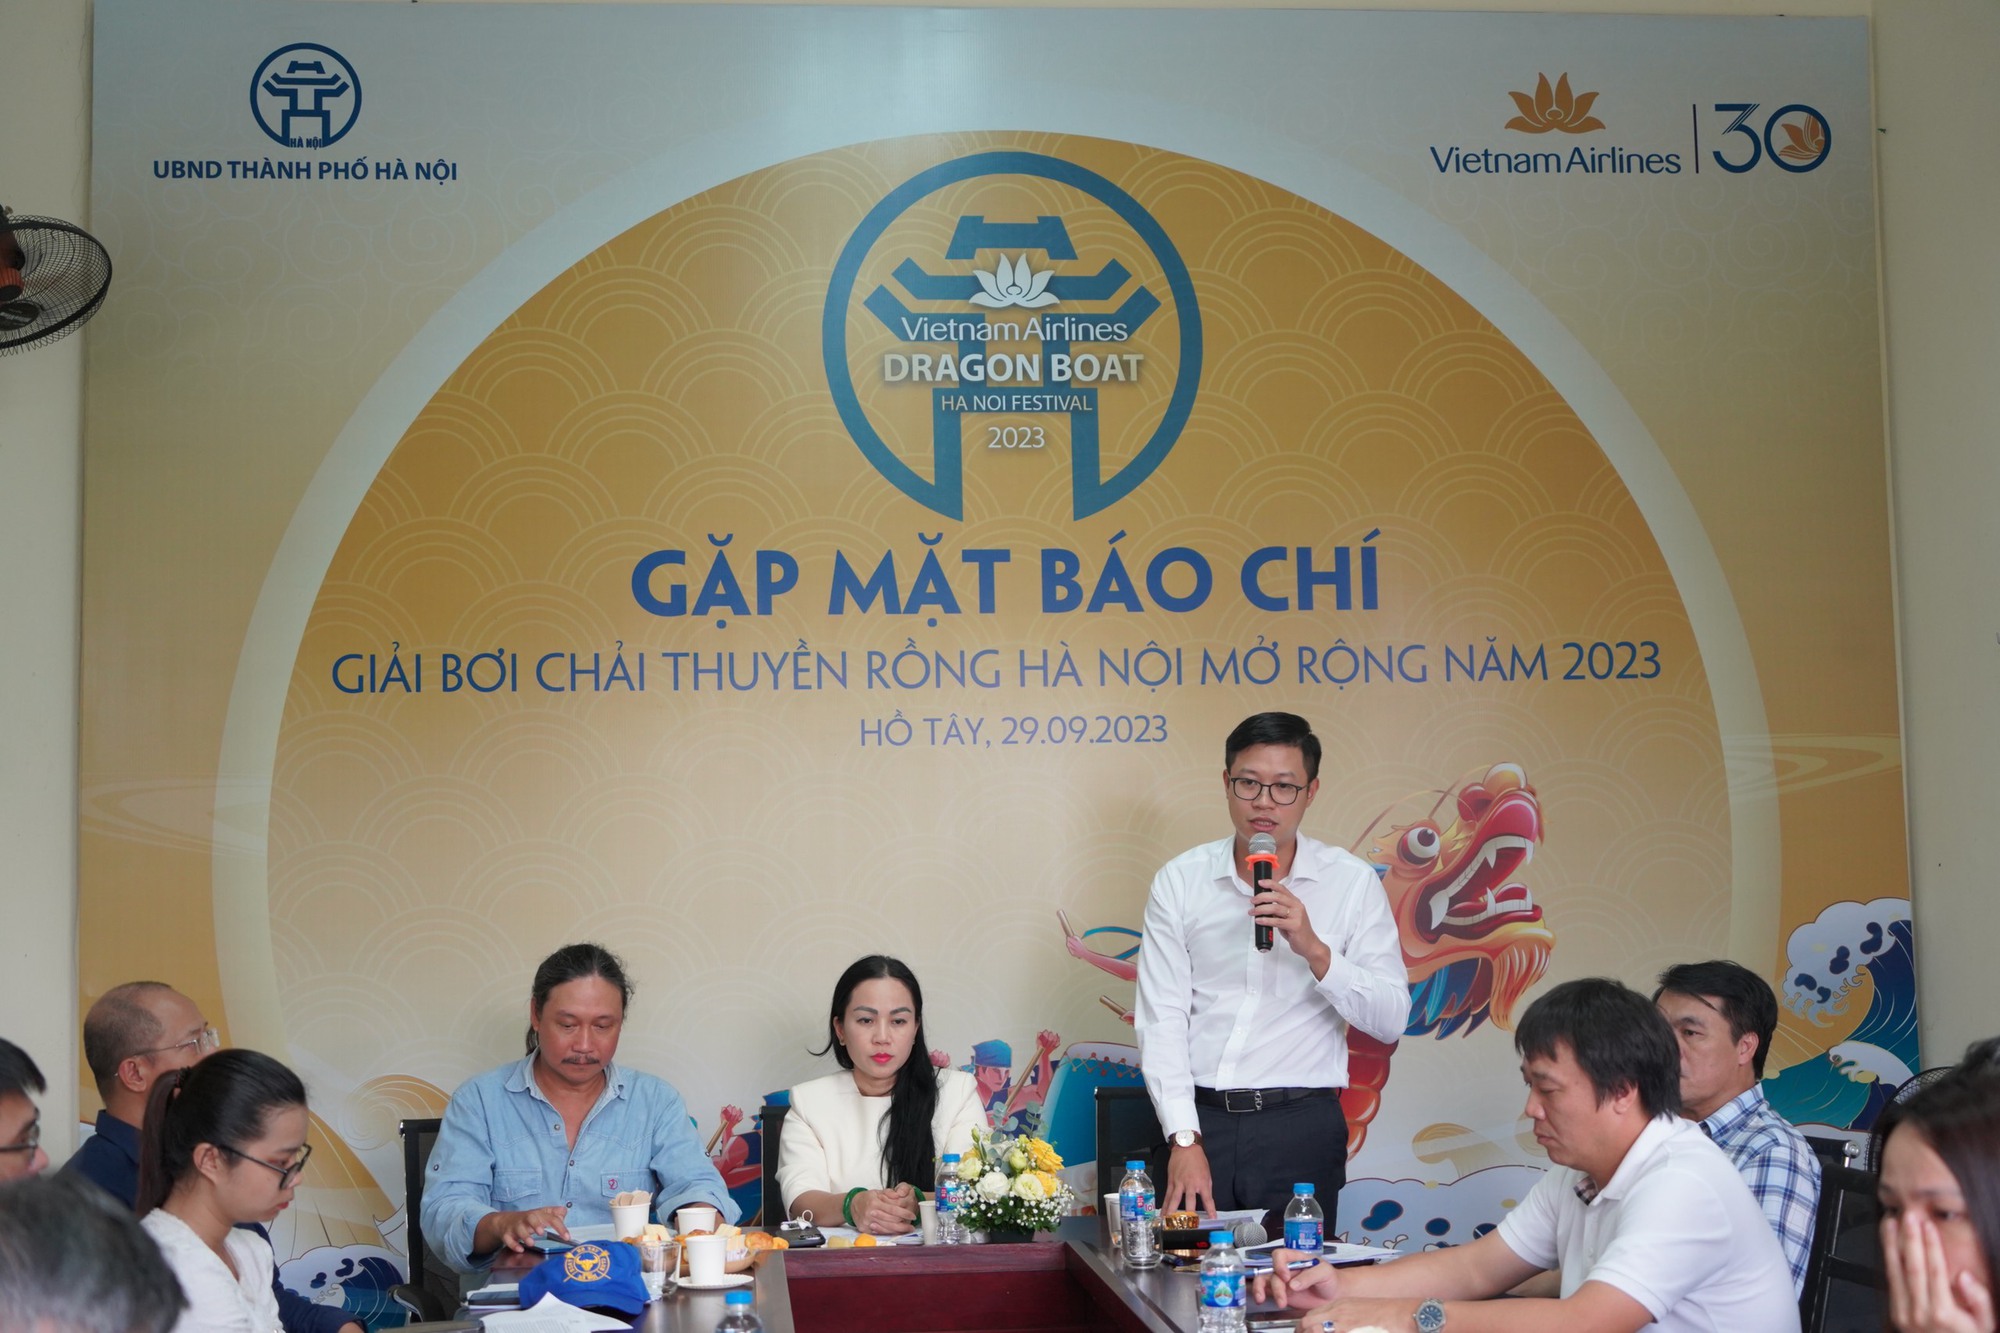 Vietnam Airlines tiếp tục đồng hành cùng giải bơi chải thuyền Rồng Hà Nội mở rộng năm 2023 - Ảnh 1.